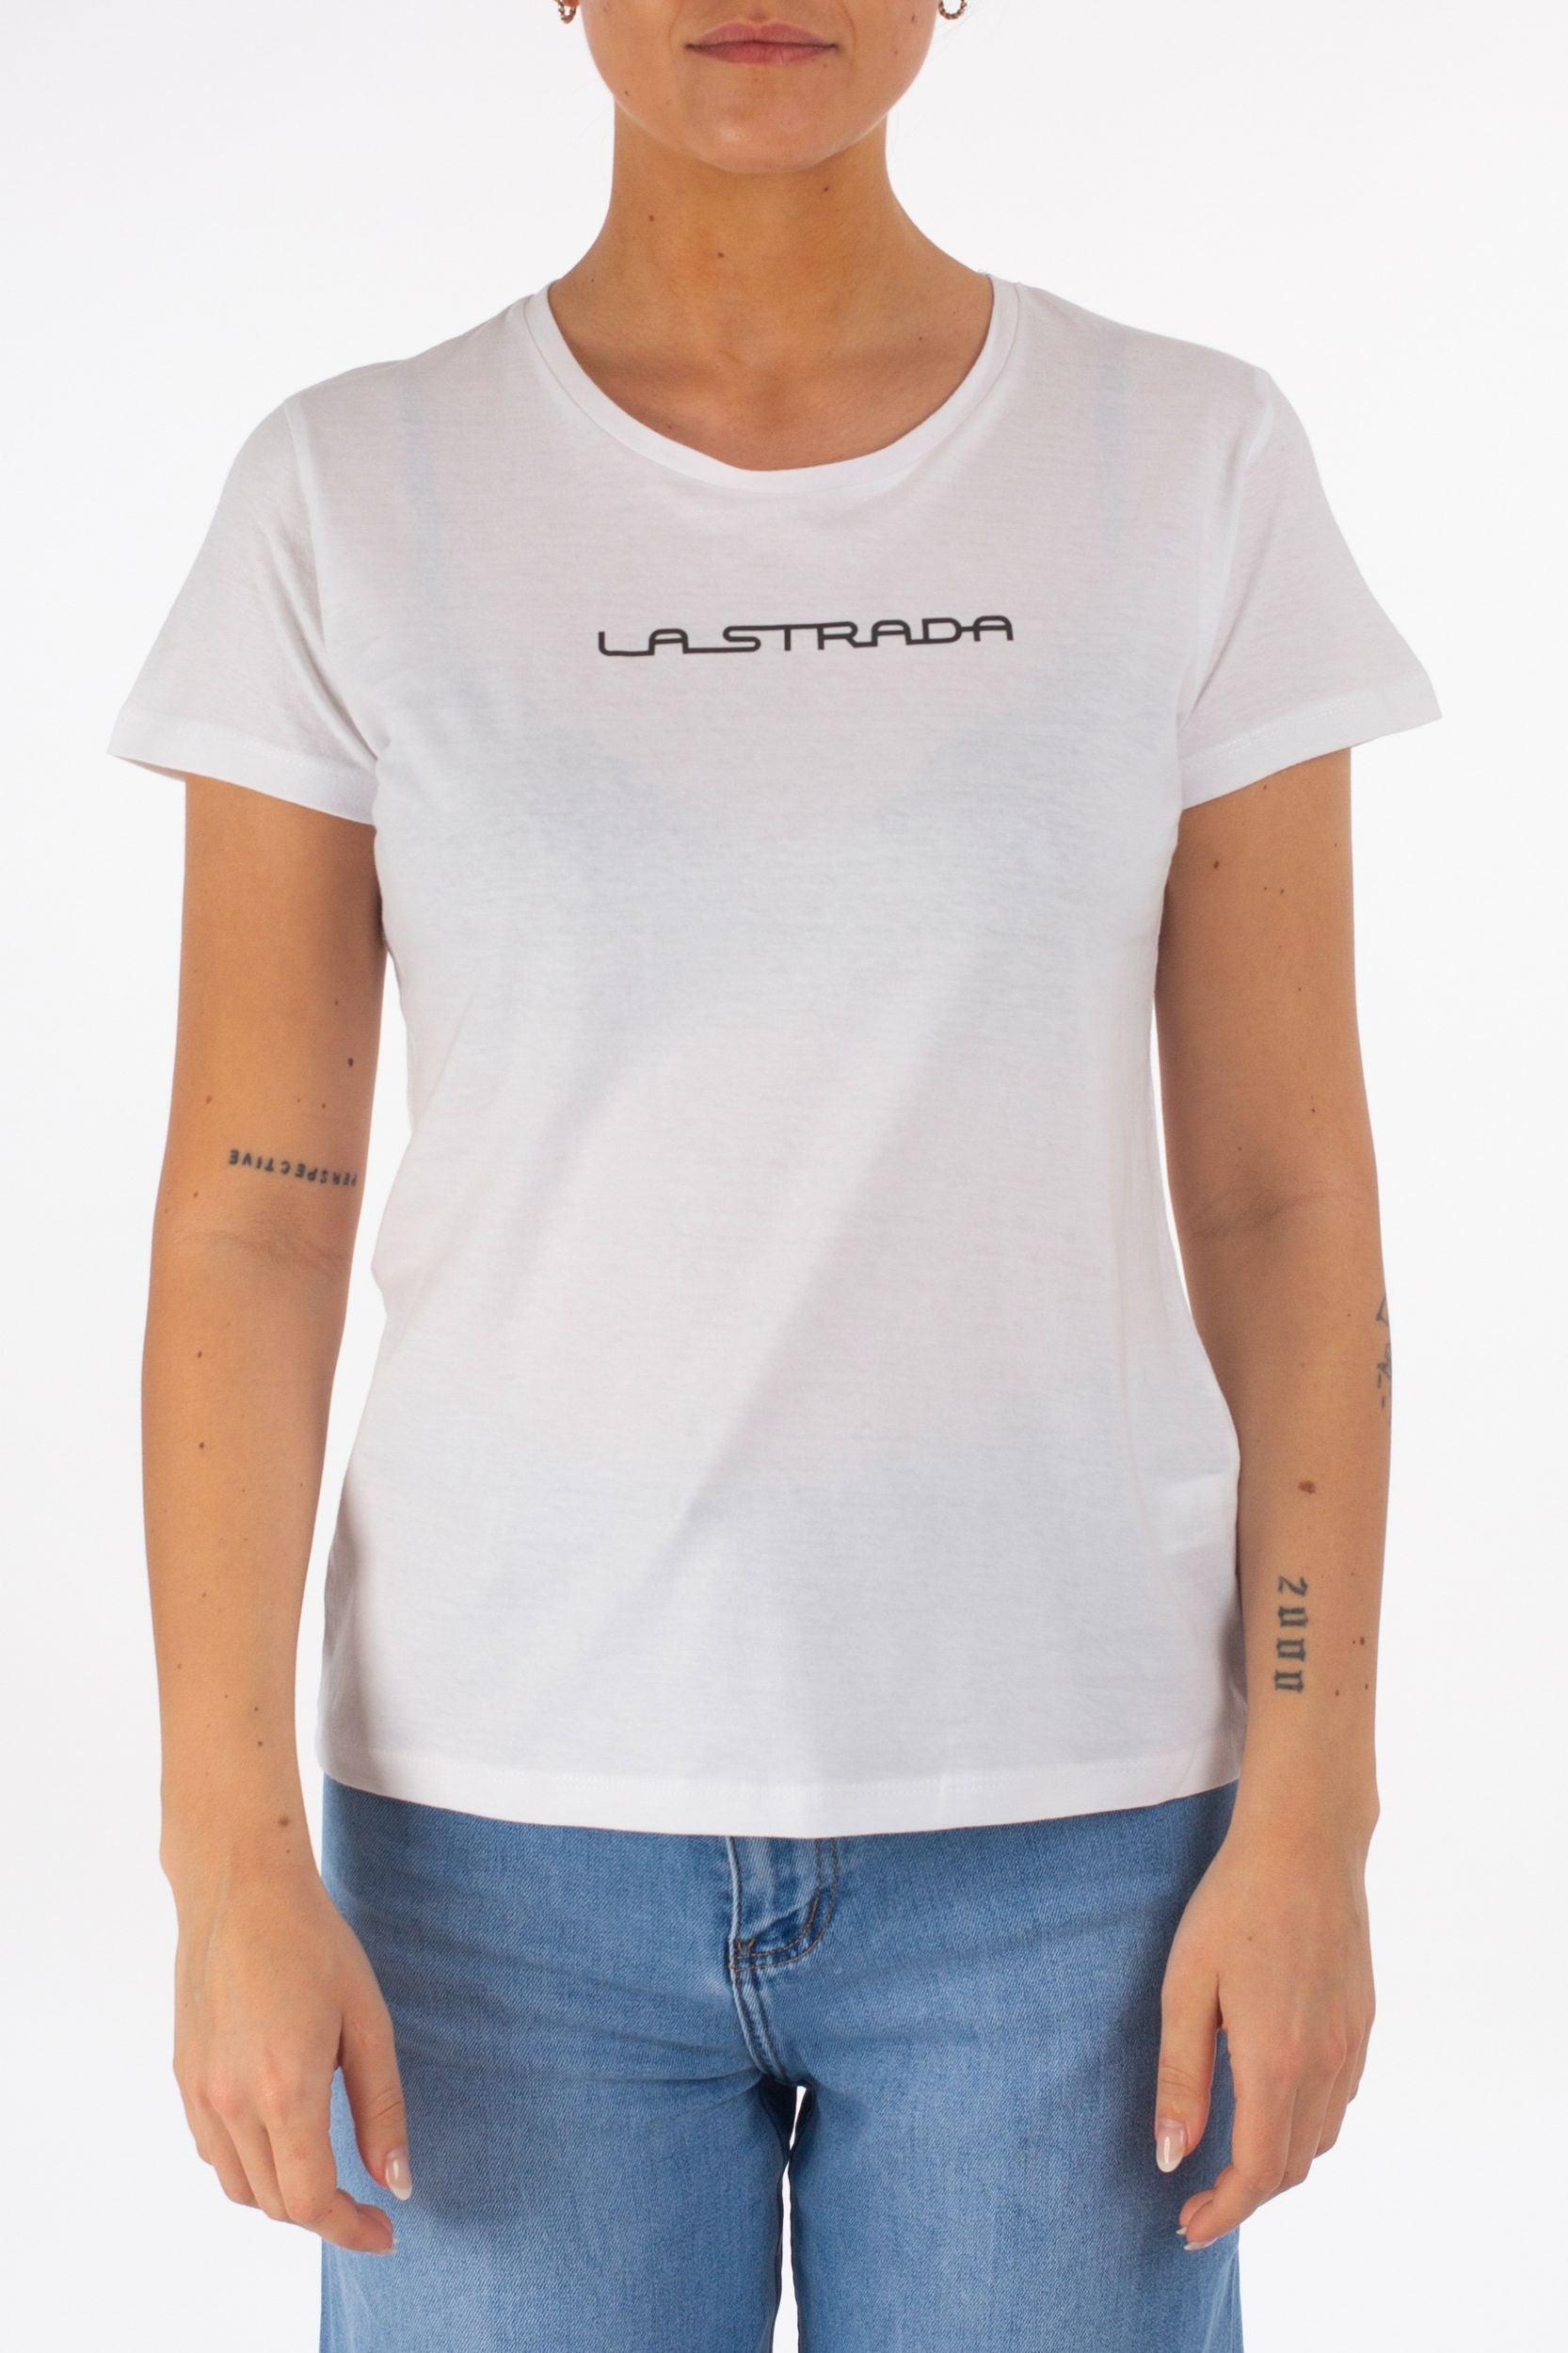 T-Shirt "La Strada" - La Strada